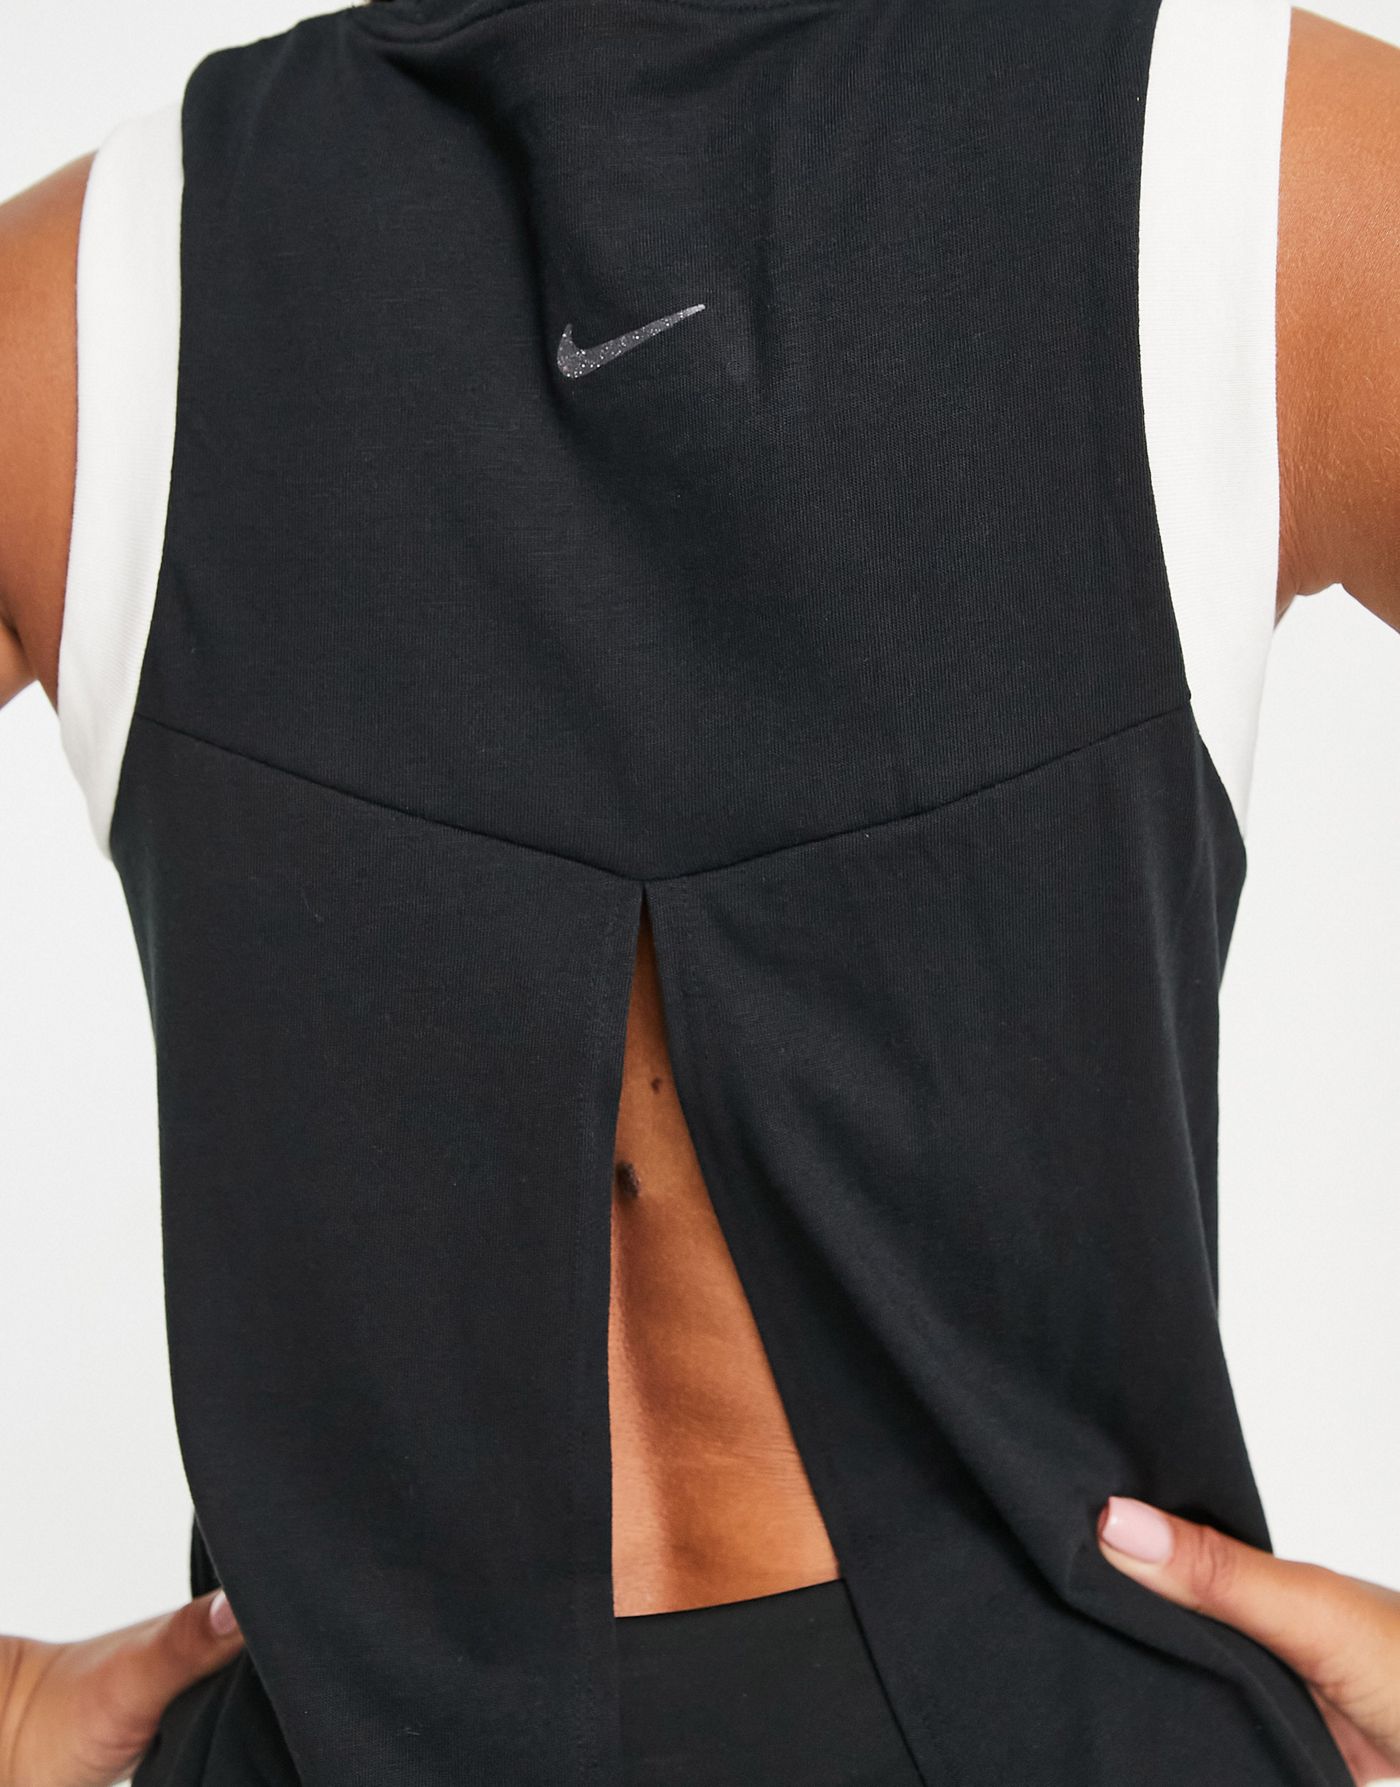 Nike Yoga Dri-FIT split back tank in black